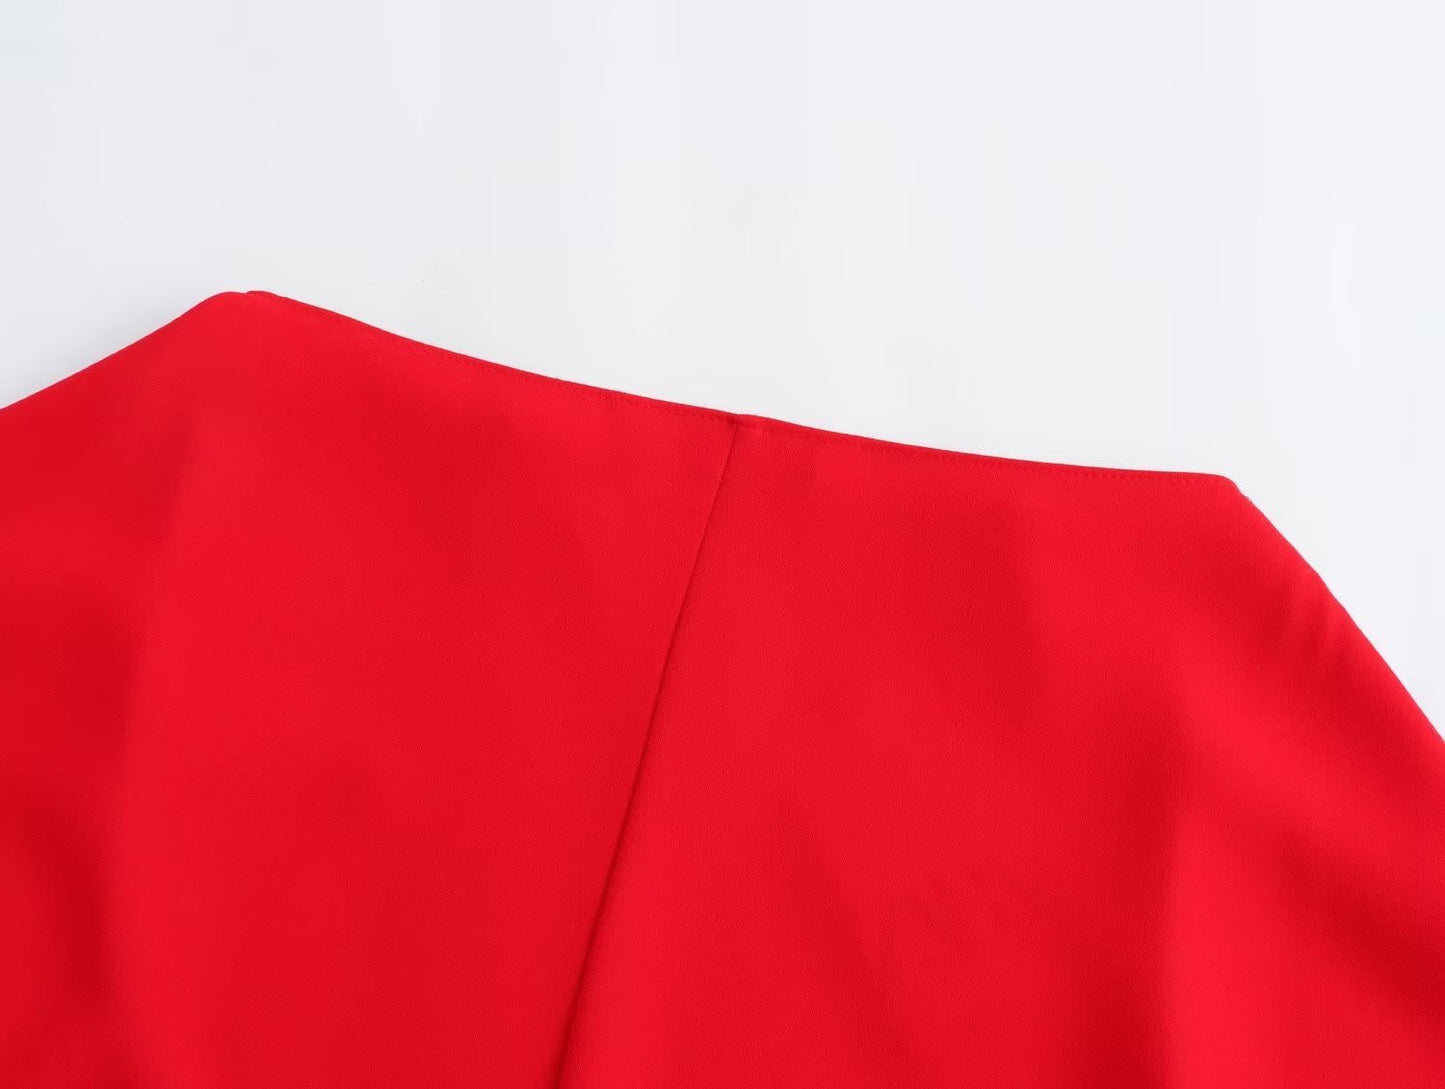 Women's Solid Color Asymmetric Shirt Dress